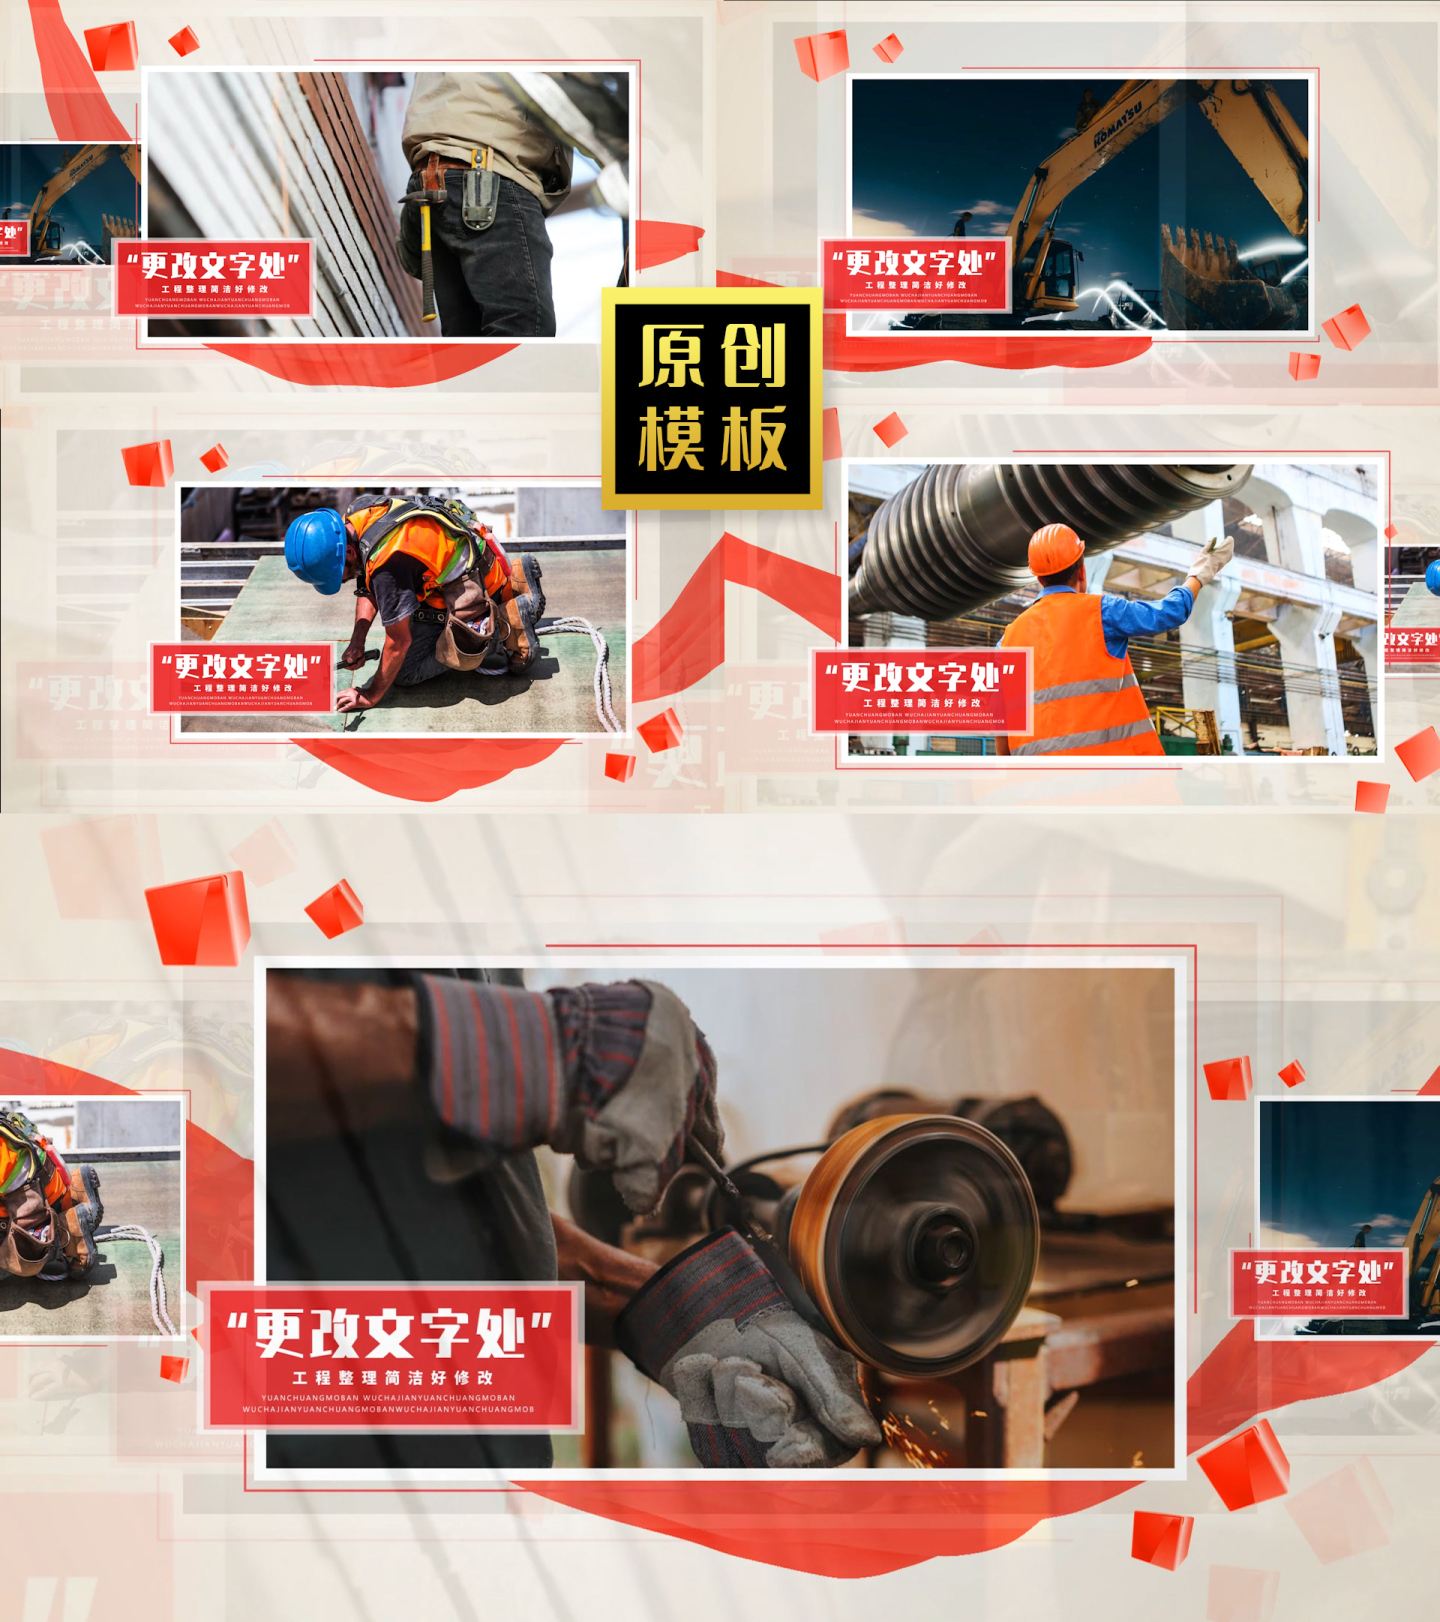 红绸企业图文介绍工地项目照片轮播模板